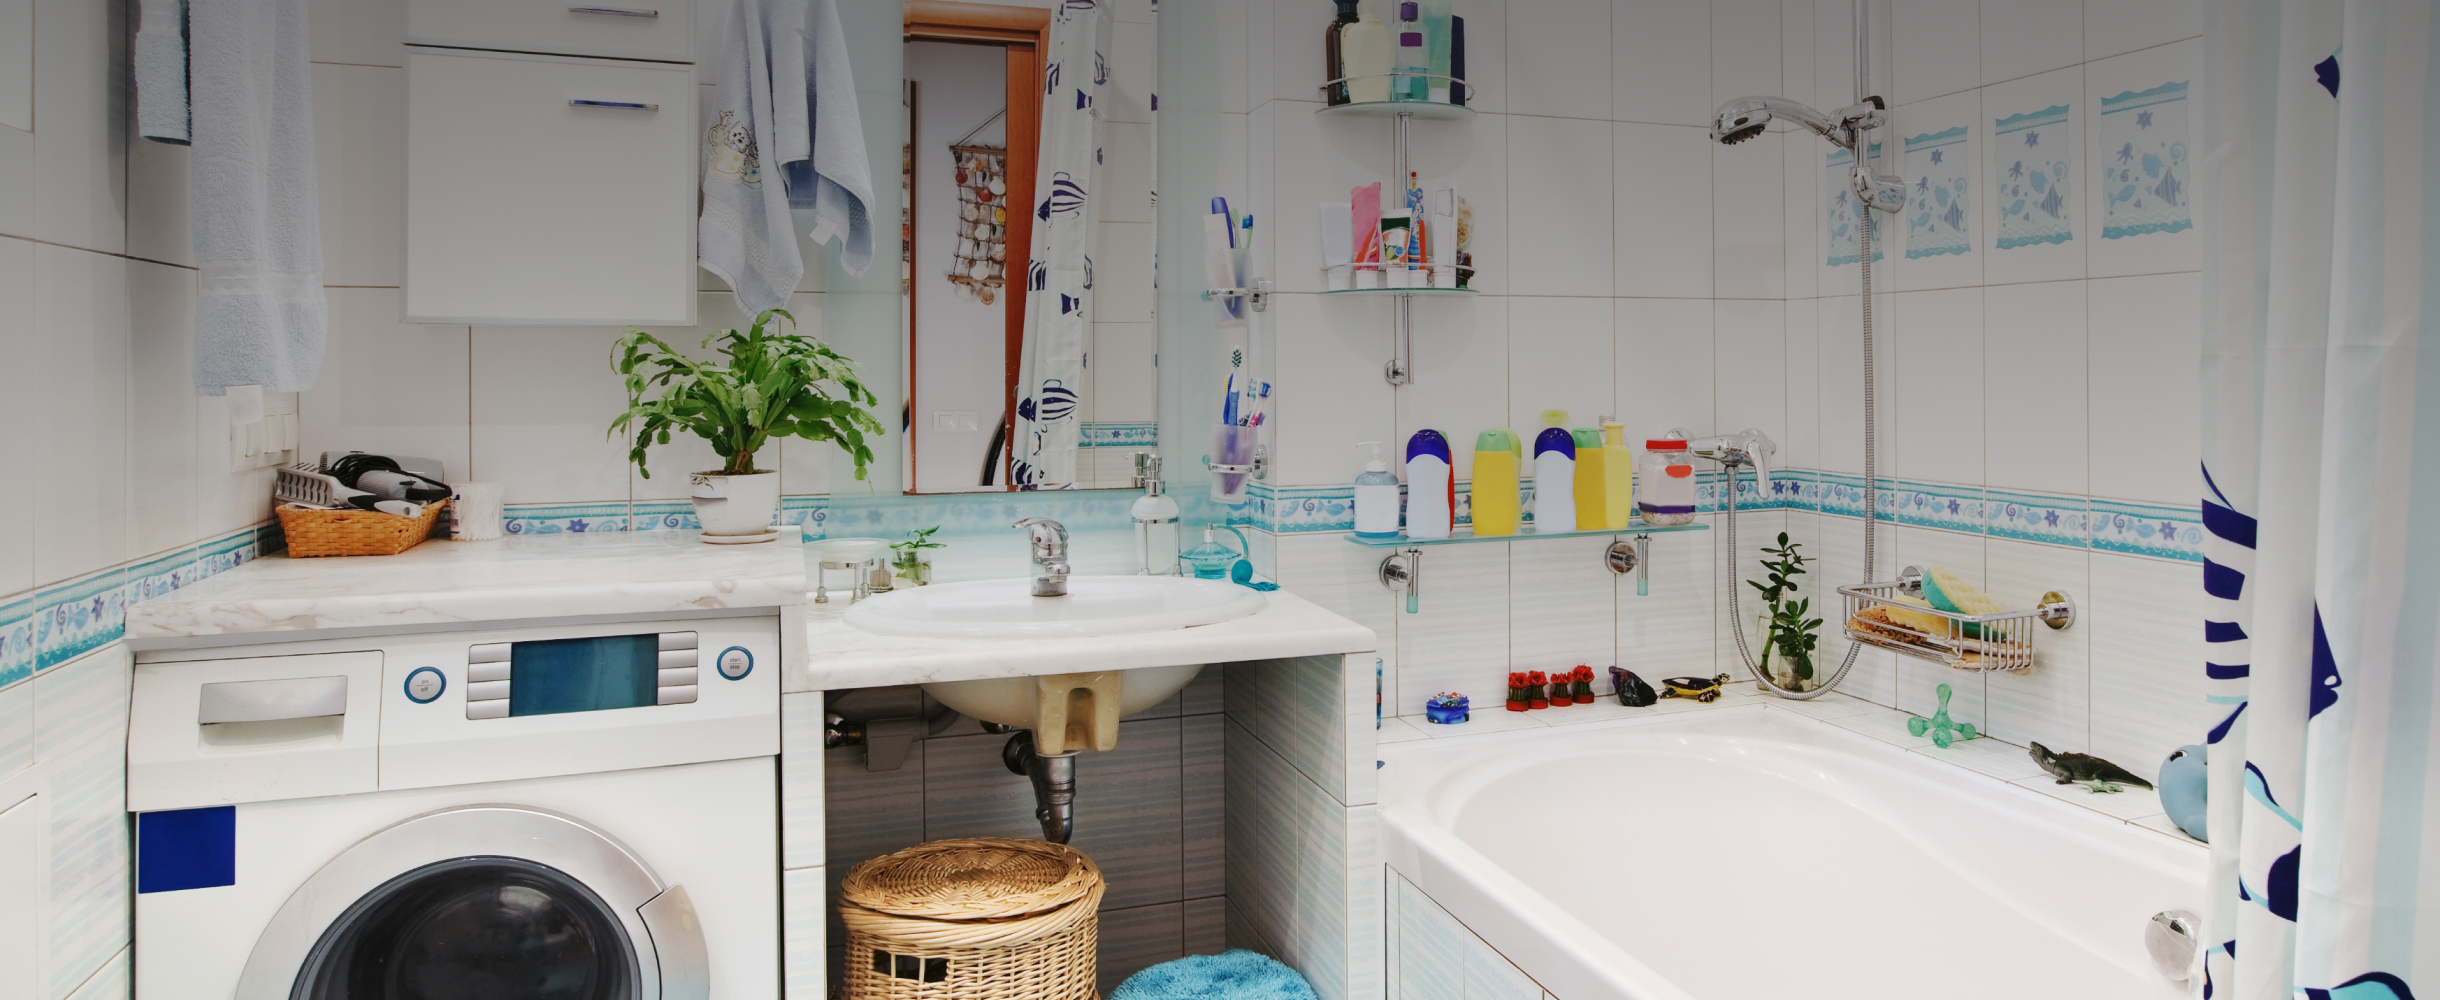 «Никаких батарей из пузырьков на краю ванной»: 7 способов сделать маленький санузел удобнее